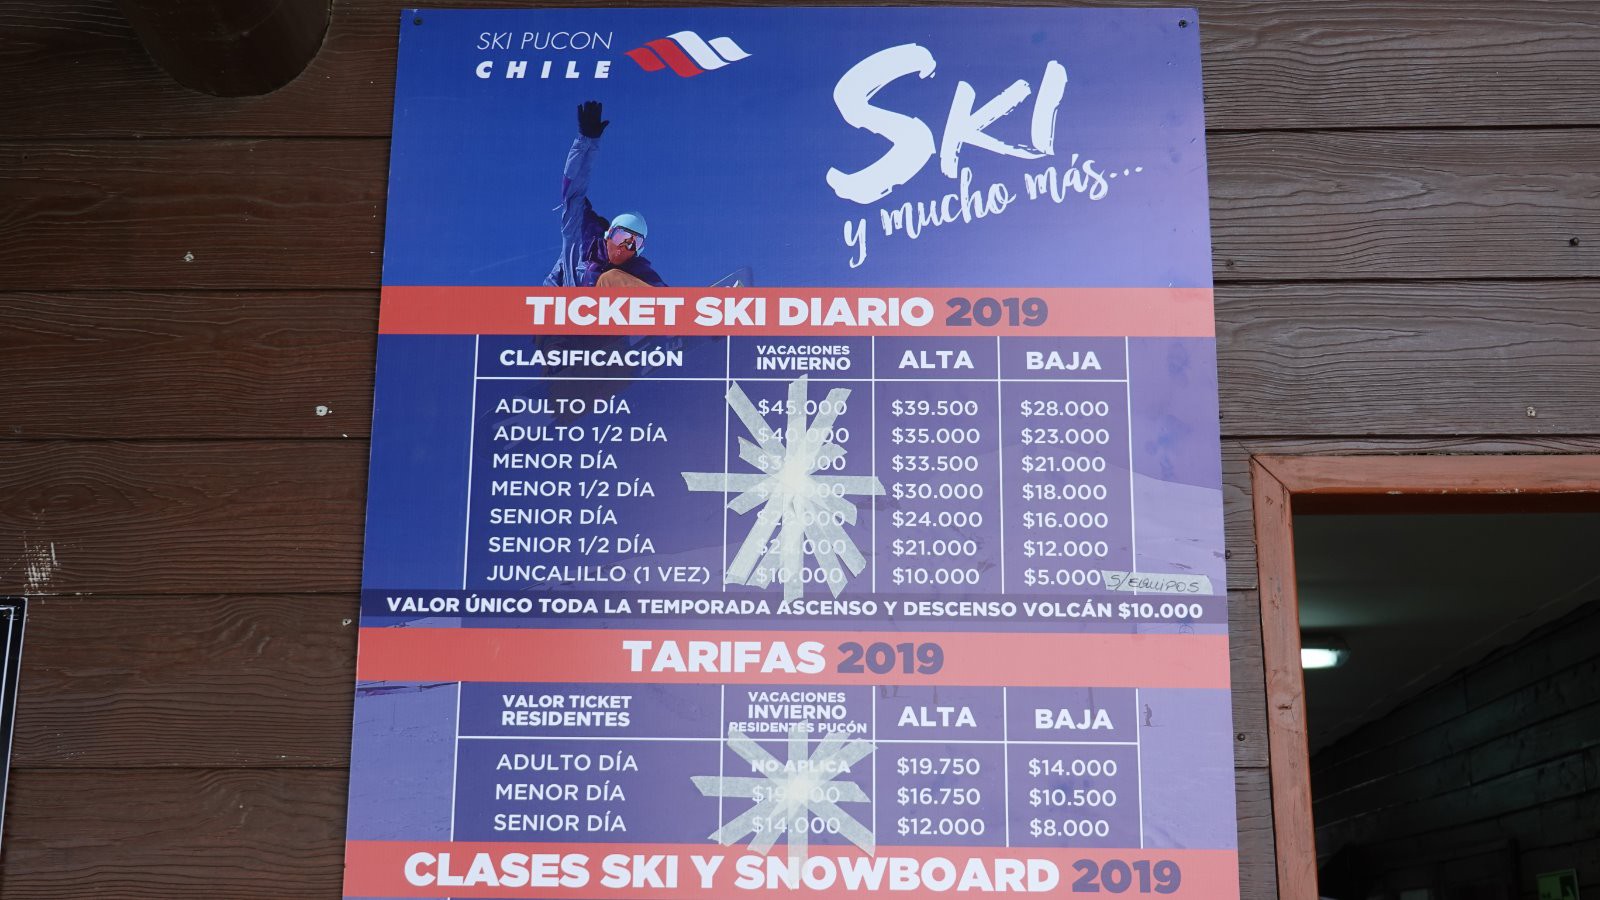 Les forfaits de ski sont chers au Chili surtout pour une station avec 4 remontées qui fonctionnent